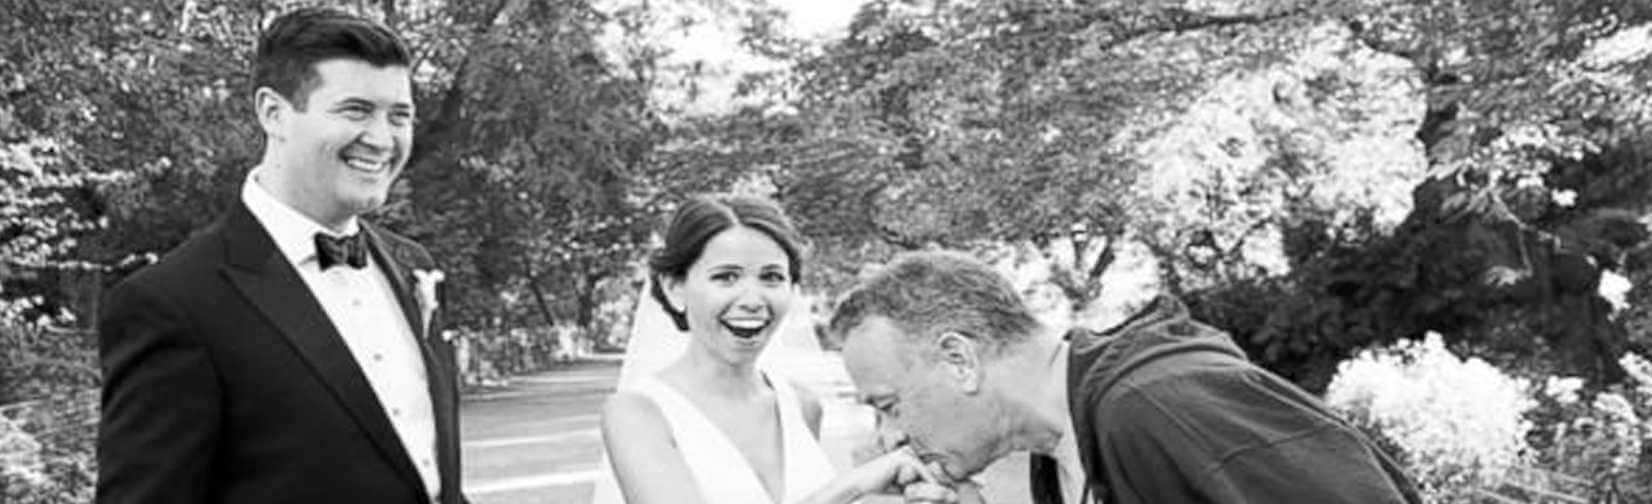 Tom Hanks Crashes Newly-weds' Photo Shoot 